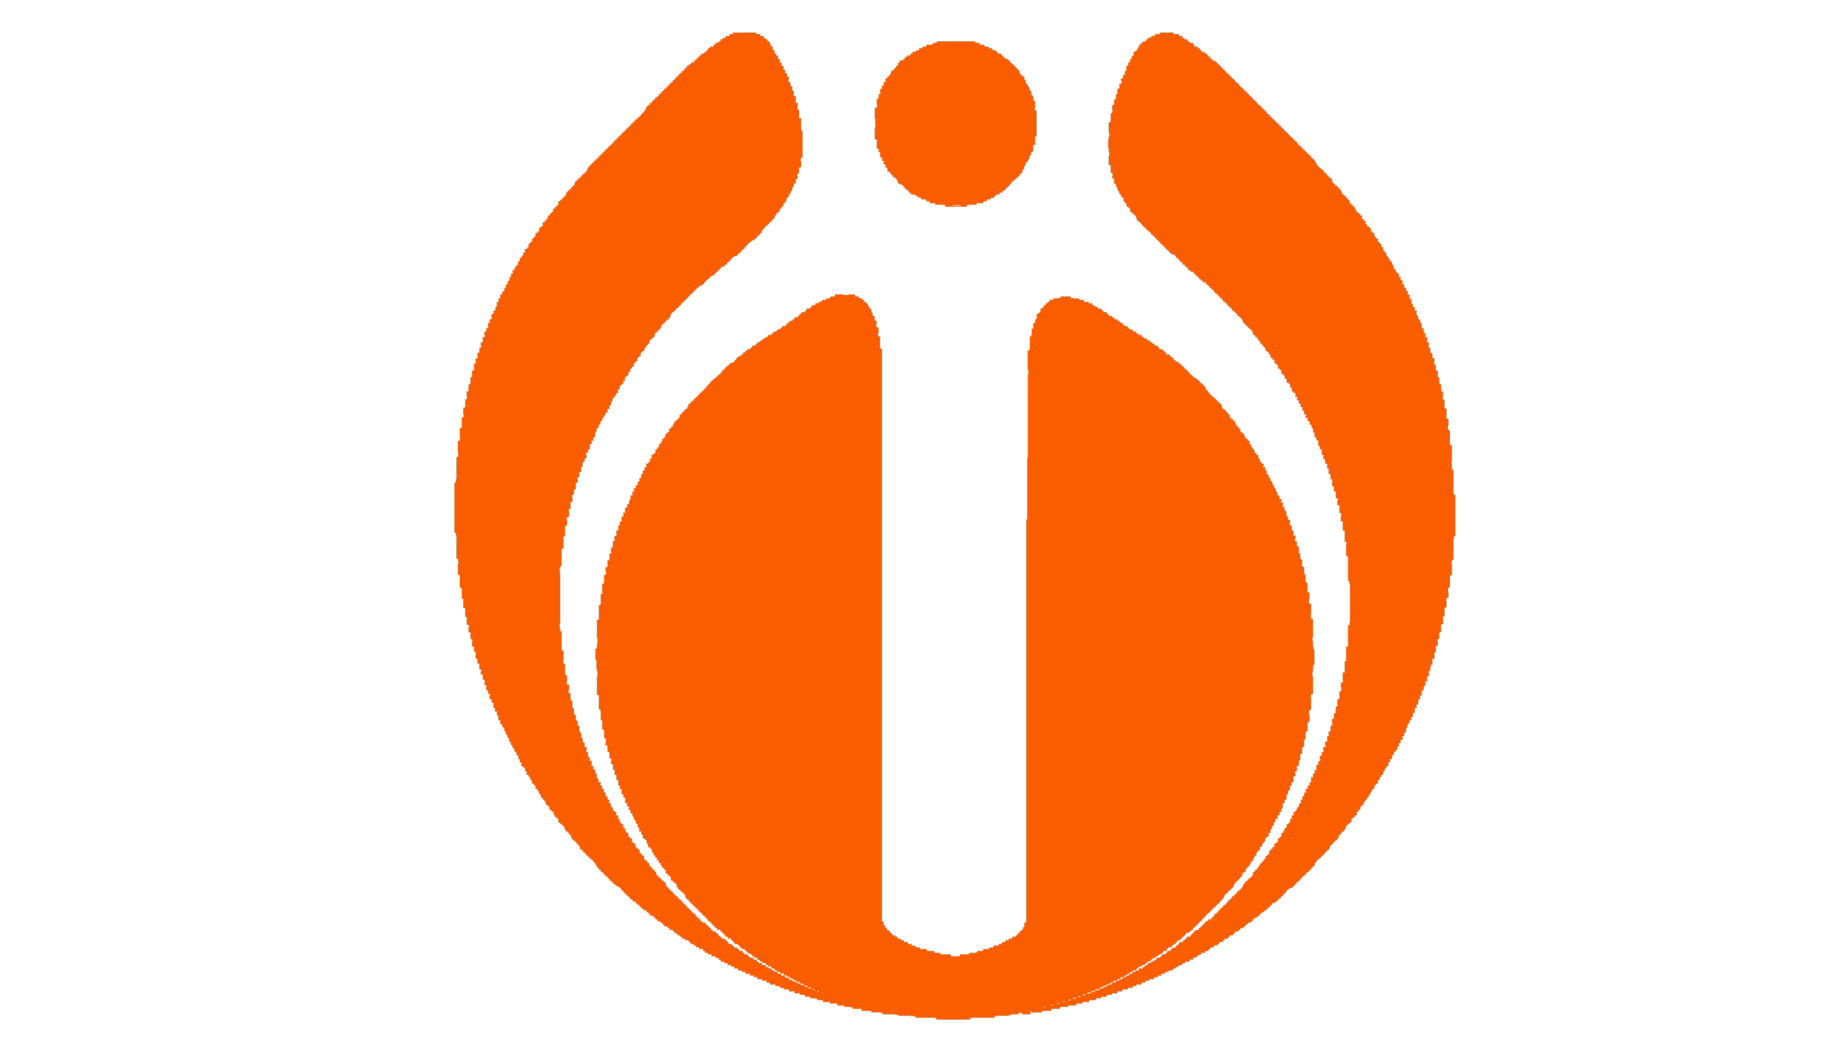 Idbi bank logo